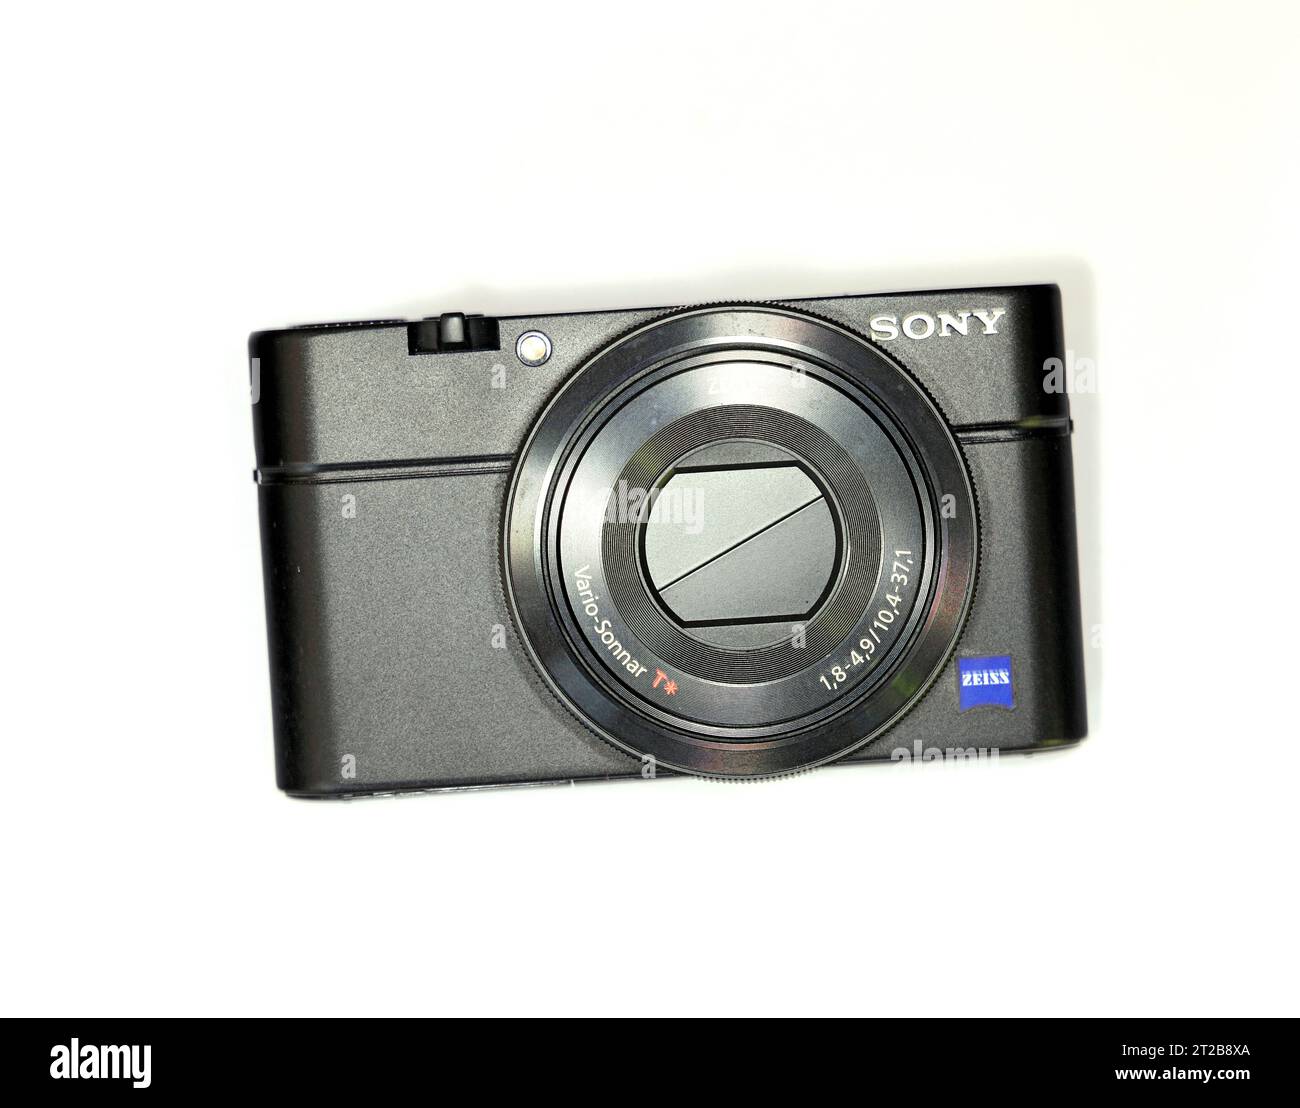 Kompakte Digitalkamera Sony Cyber shot RX100. Stockfoto